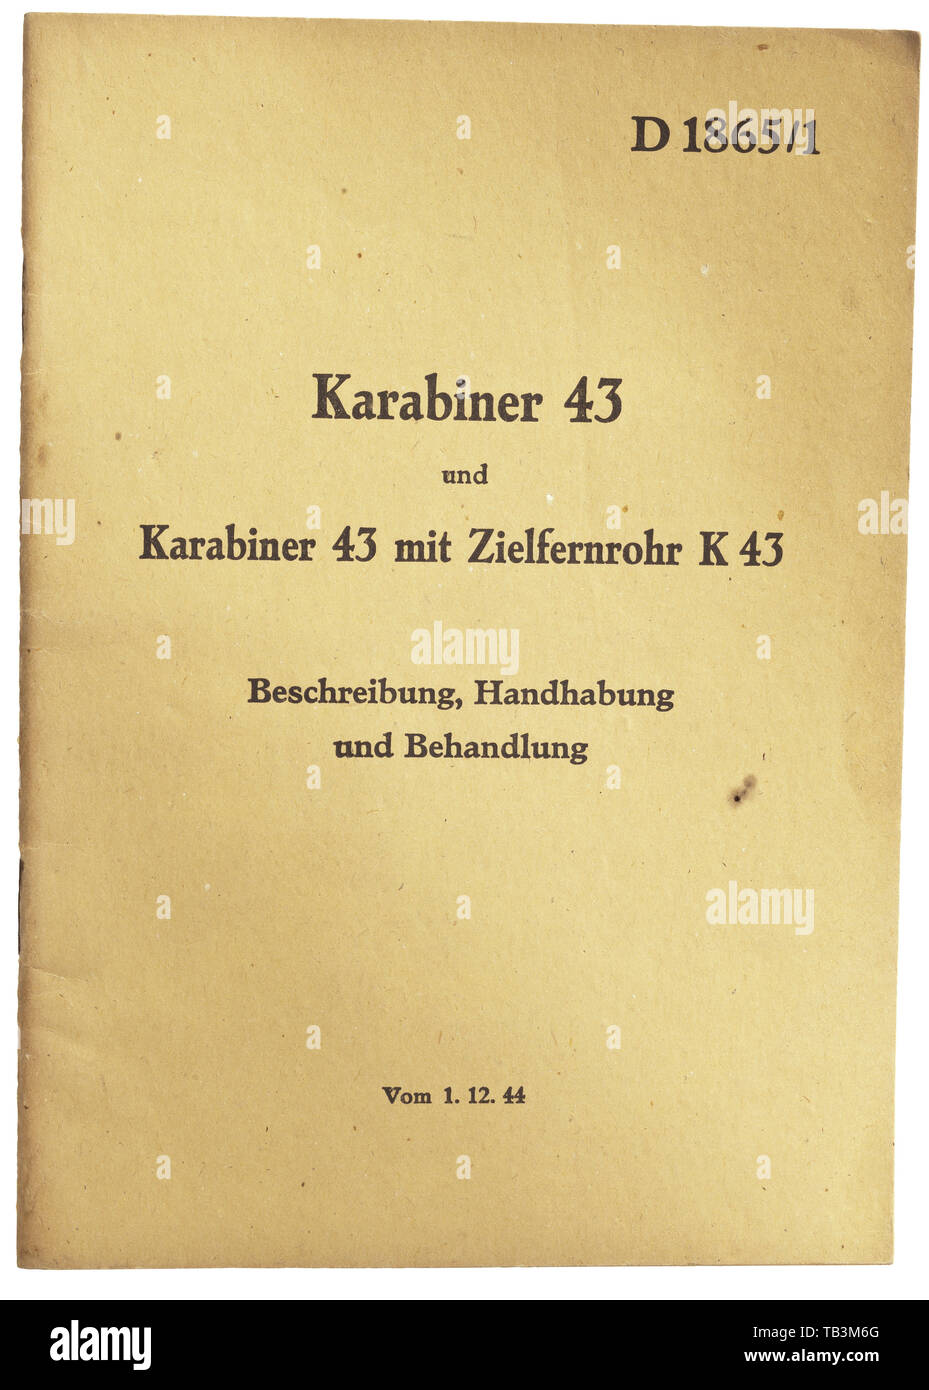 Un original D 1865/1 Mosqueton de '43', publicado por el Oberkommando des Heeres (Ejército), el Comando Superior Heereswaffenamt, Departamento para el desarrollo y las pruebas, a partir del 1 de diciembre de 19441 DIN A5, 36 páginas profusamente ilustradas, subdivididos en general, la descripción de armas y accesorios, manipulación, disparos, paradas, limpieza y reparación. En el apéndice "Prüfen und des Berichtigen Abkommens im Zielfernrohr K 43' (tr. "Probar y corregir de la retícula en ámbito K 43'). Extremadamente raro manual desde los últimos días de la guerra. Cf. Weaver, Hitler Garands, p. 183, derecho, Additional-Rights-Clearance-Info-Not-Available Foto de stock